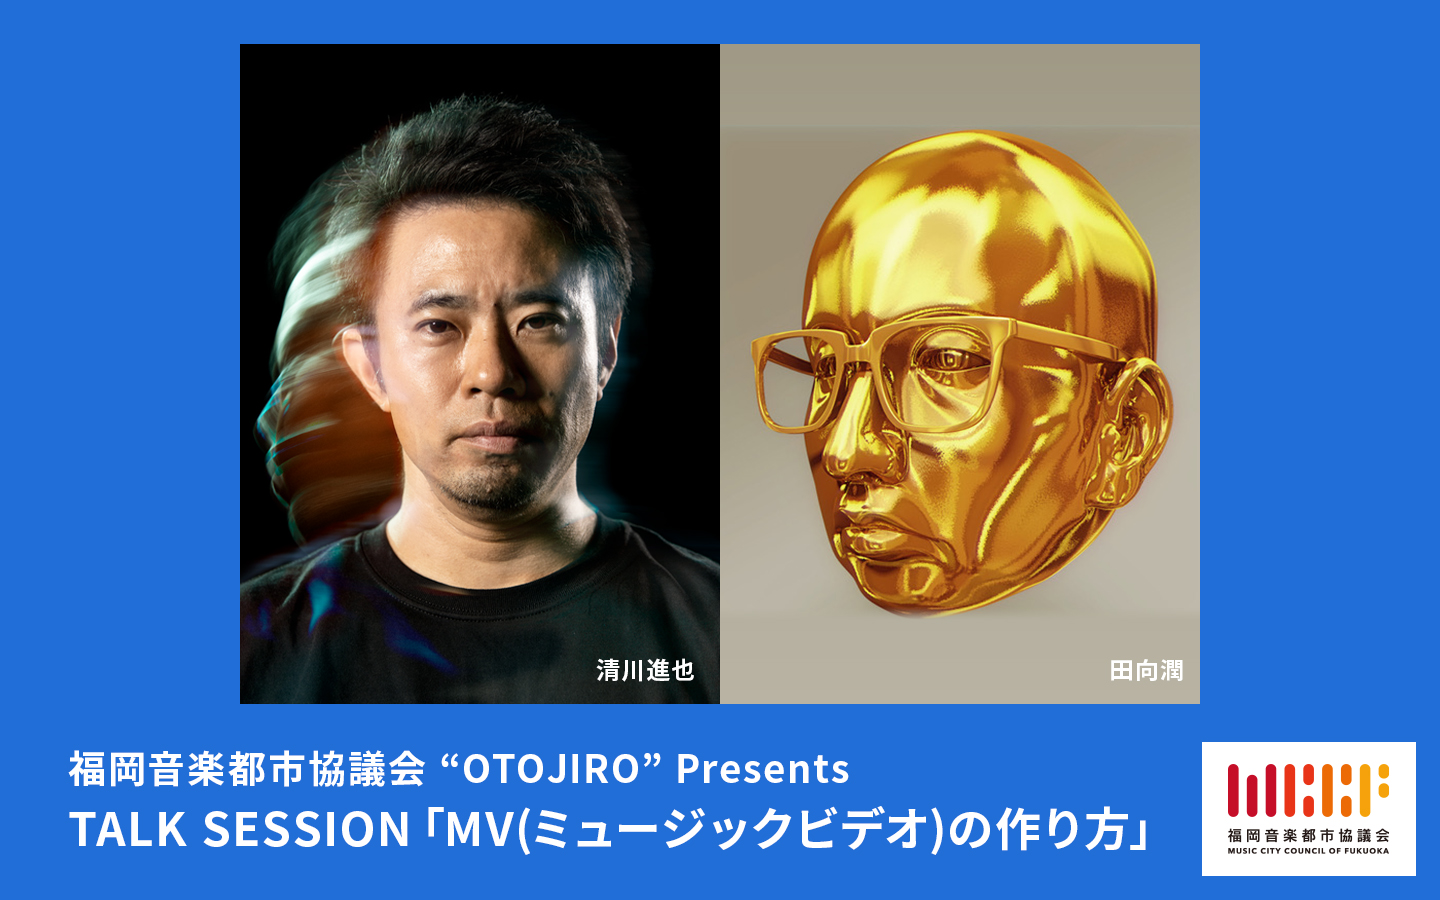 福岡音楽都市協議会 “OTOJIRO” Presents TALK SESSION「MV(ミュージックビデオ)の作り方」